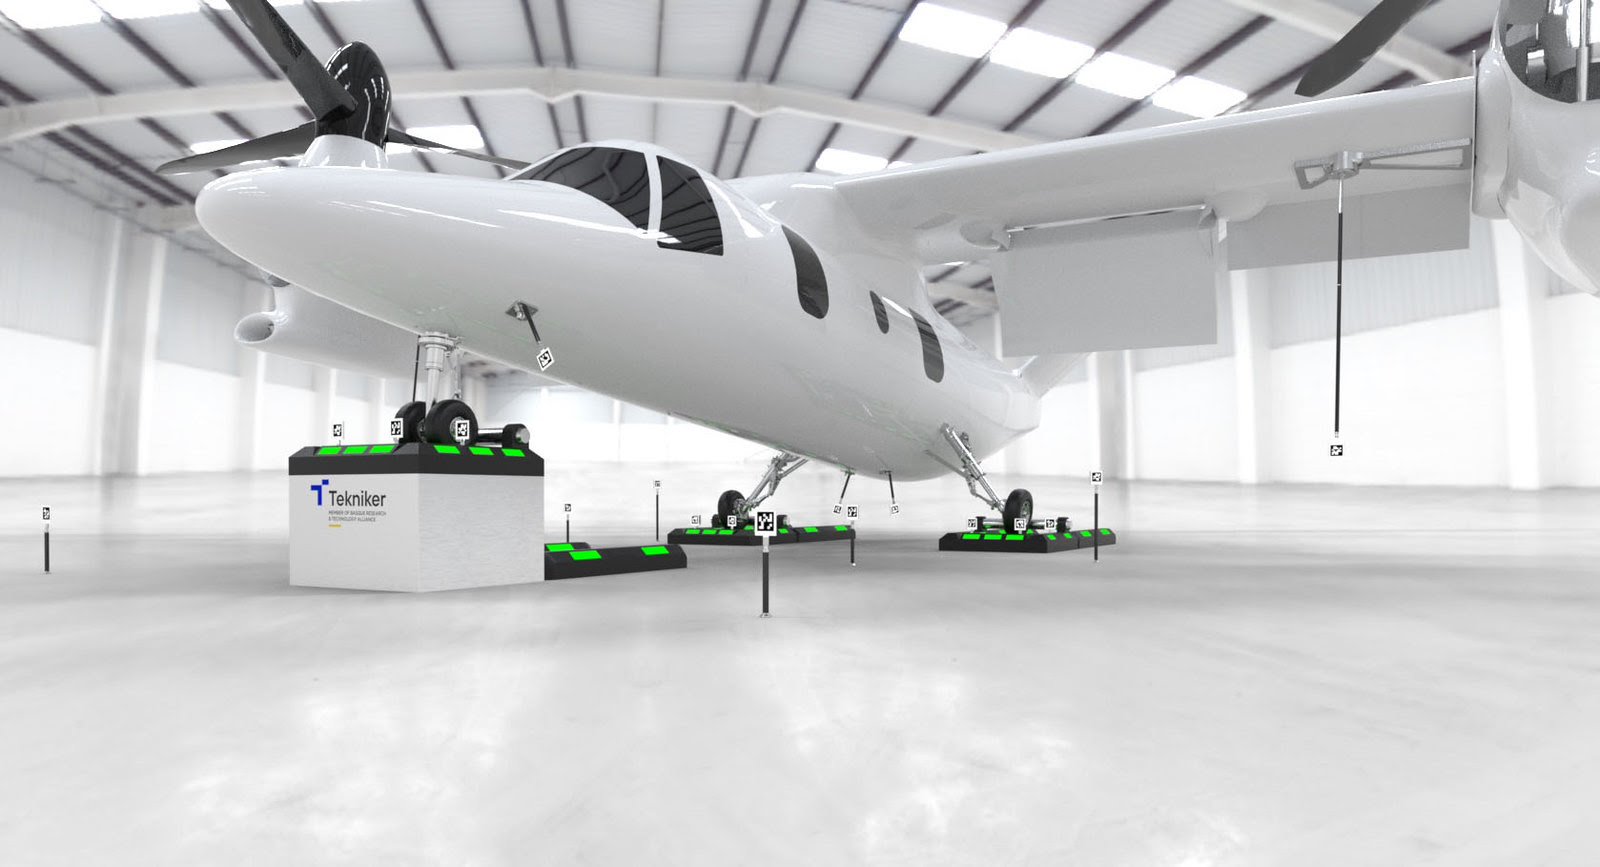 Mediciones en 3D para mejorar la eficiencia y sostenibilidad de las aeronaves